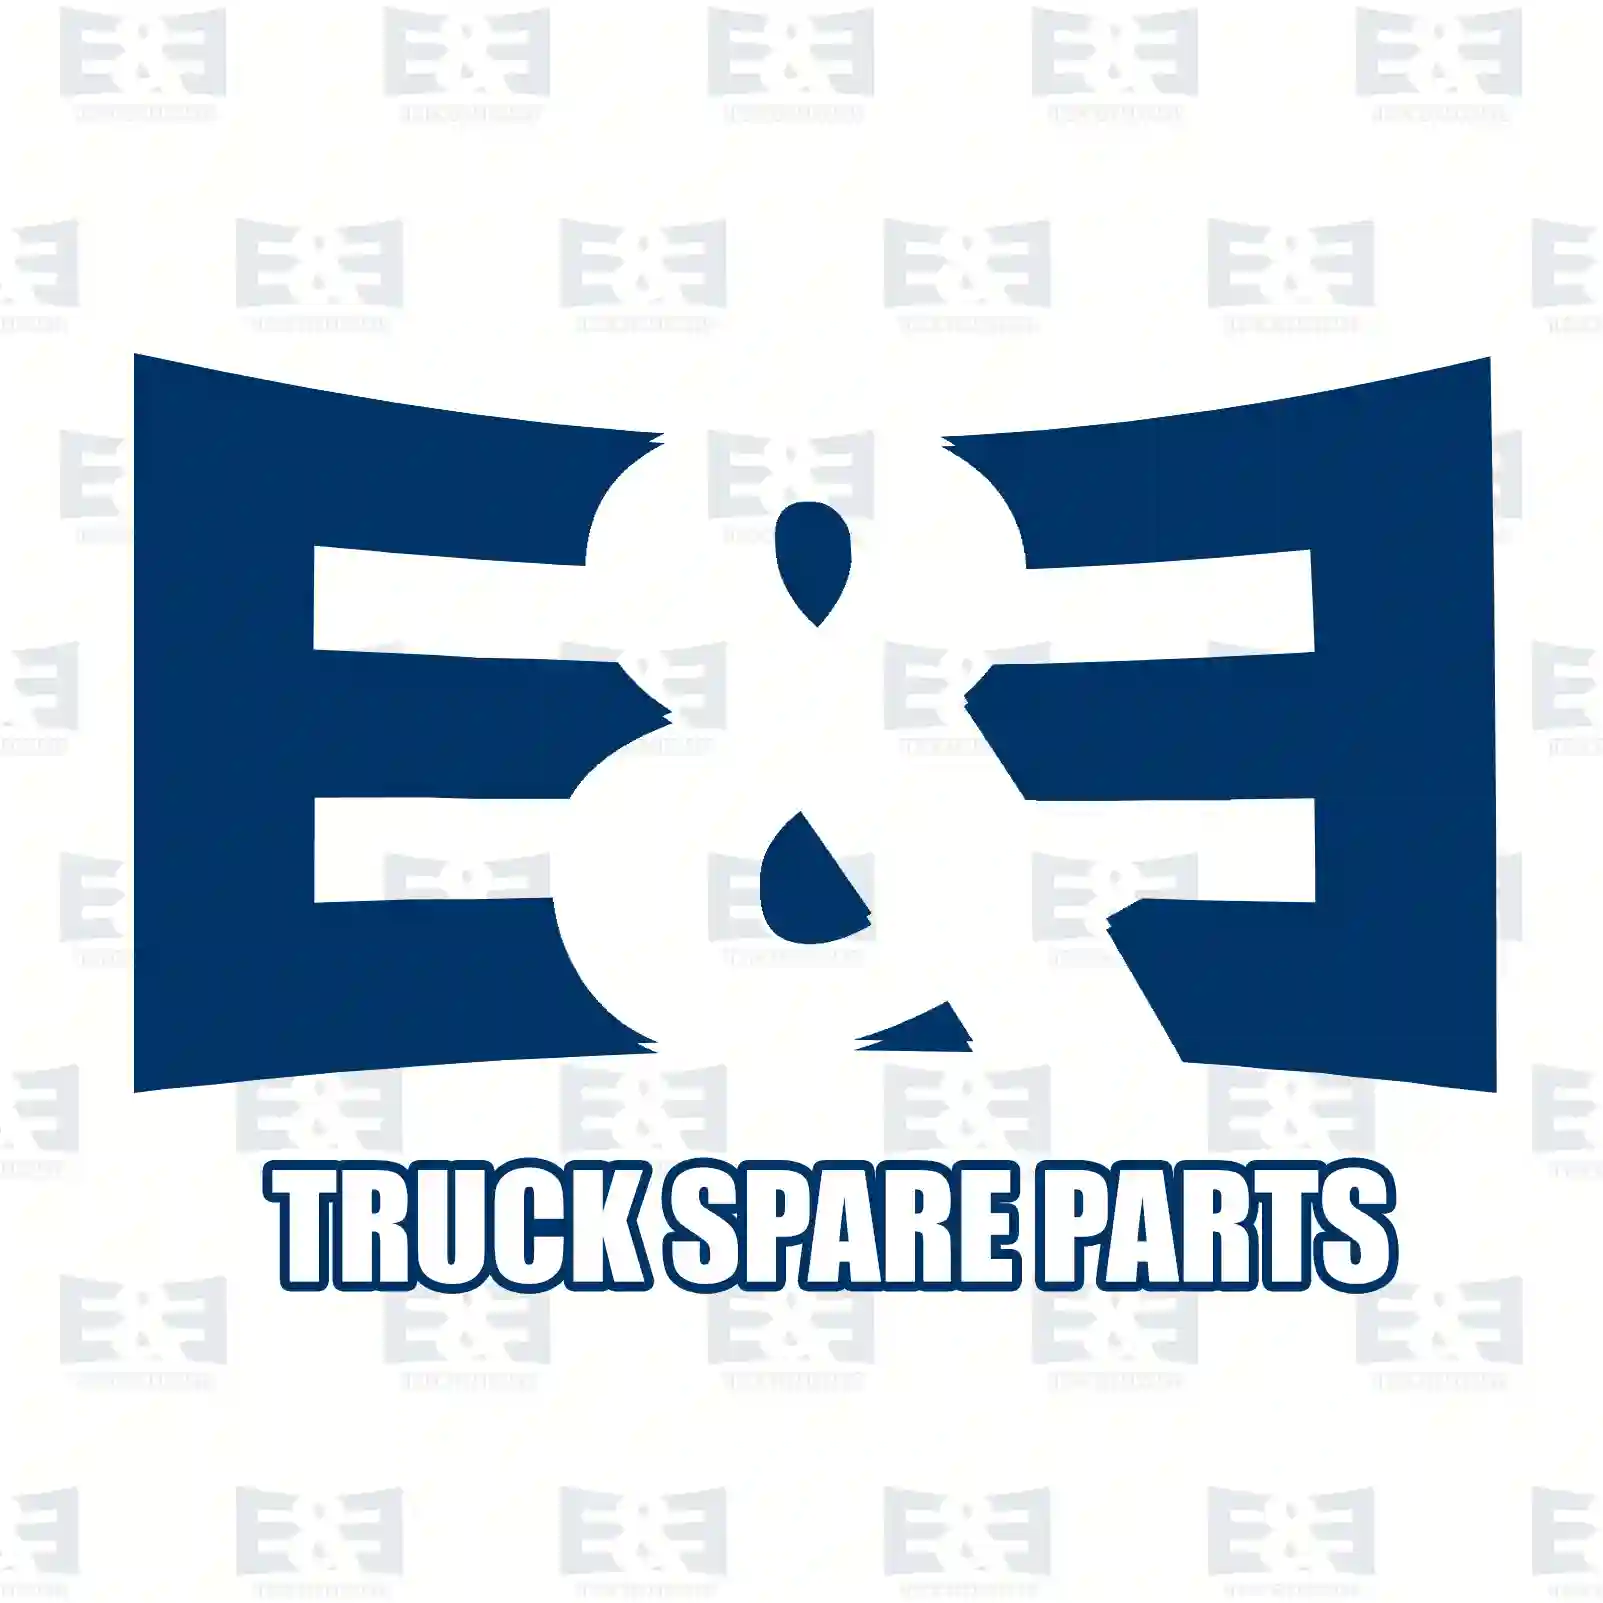 Push-in-connector, 2E2294329, ZG50586-0008 ||  2E2294329 E&E Truck Spare Parts | Truck Spare Parts, Auotomotive Spare Parts Push-in-connector, 2E2294329, ZG50586-0008 ||  2E2294329 E&E Truck Spare Parts | Truck Spare Parts, Auotomotive Spare Parts